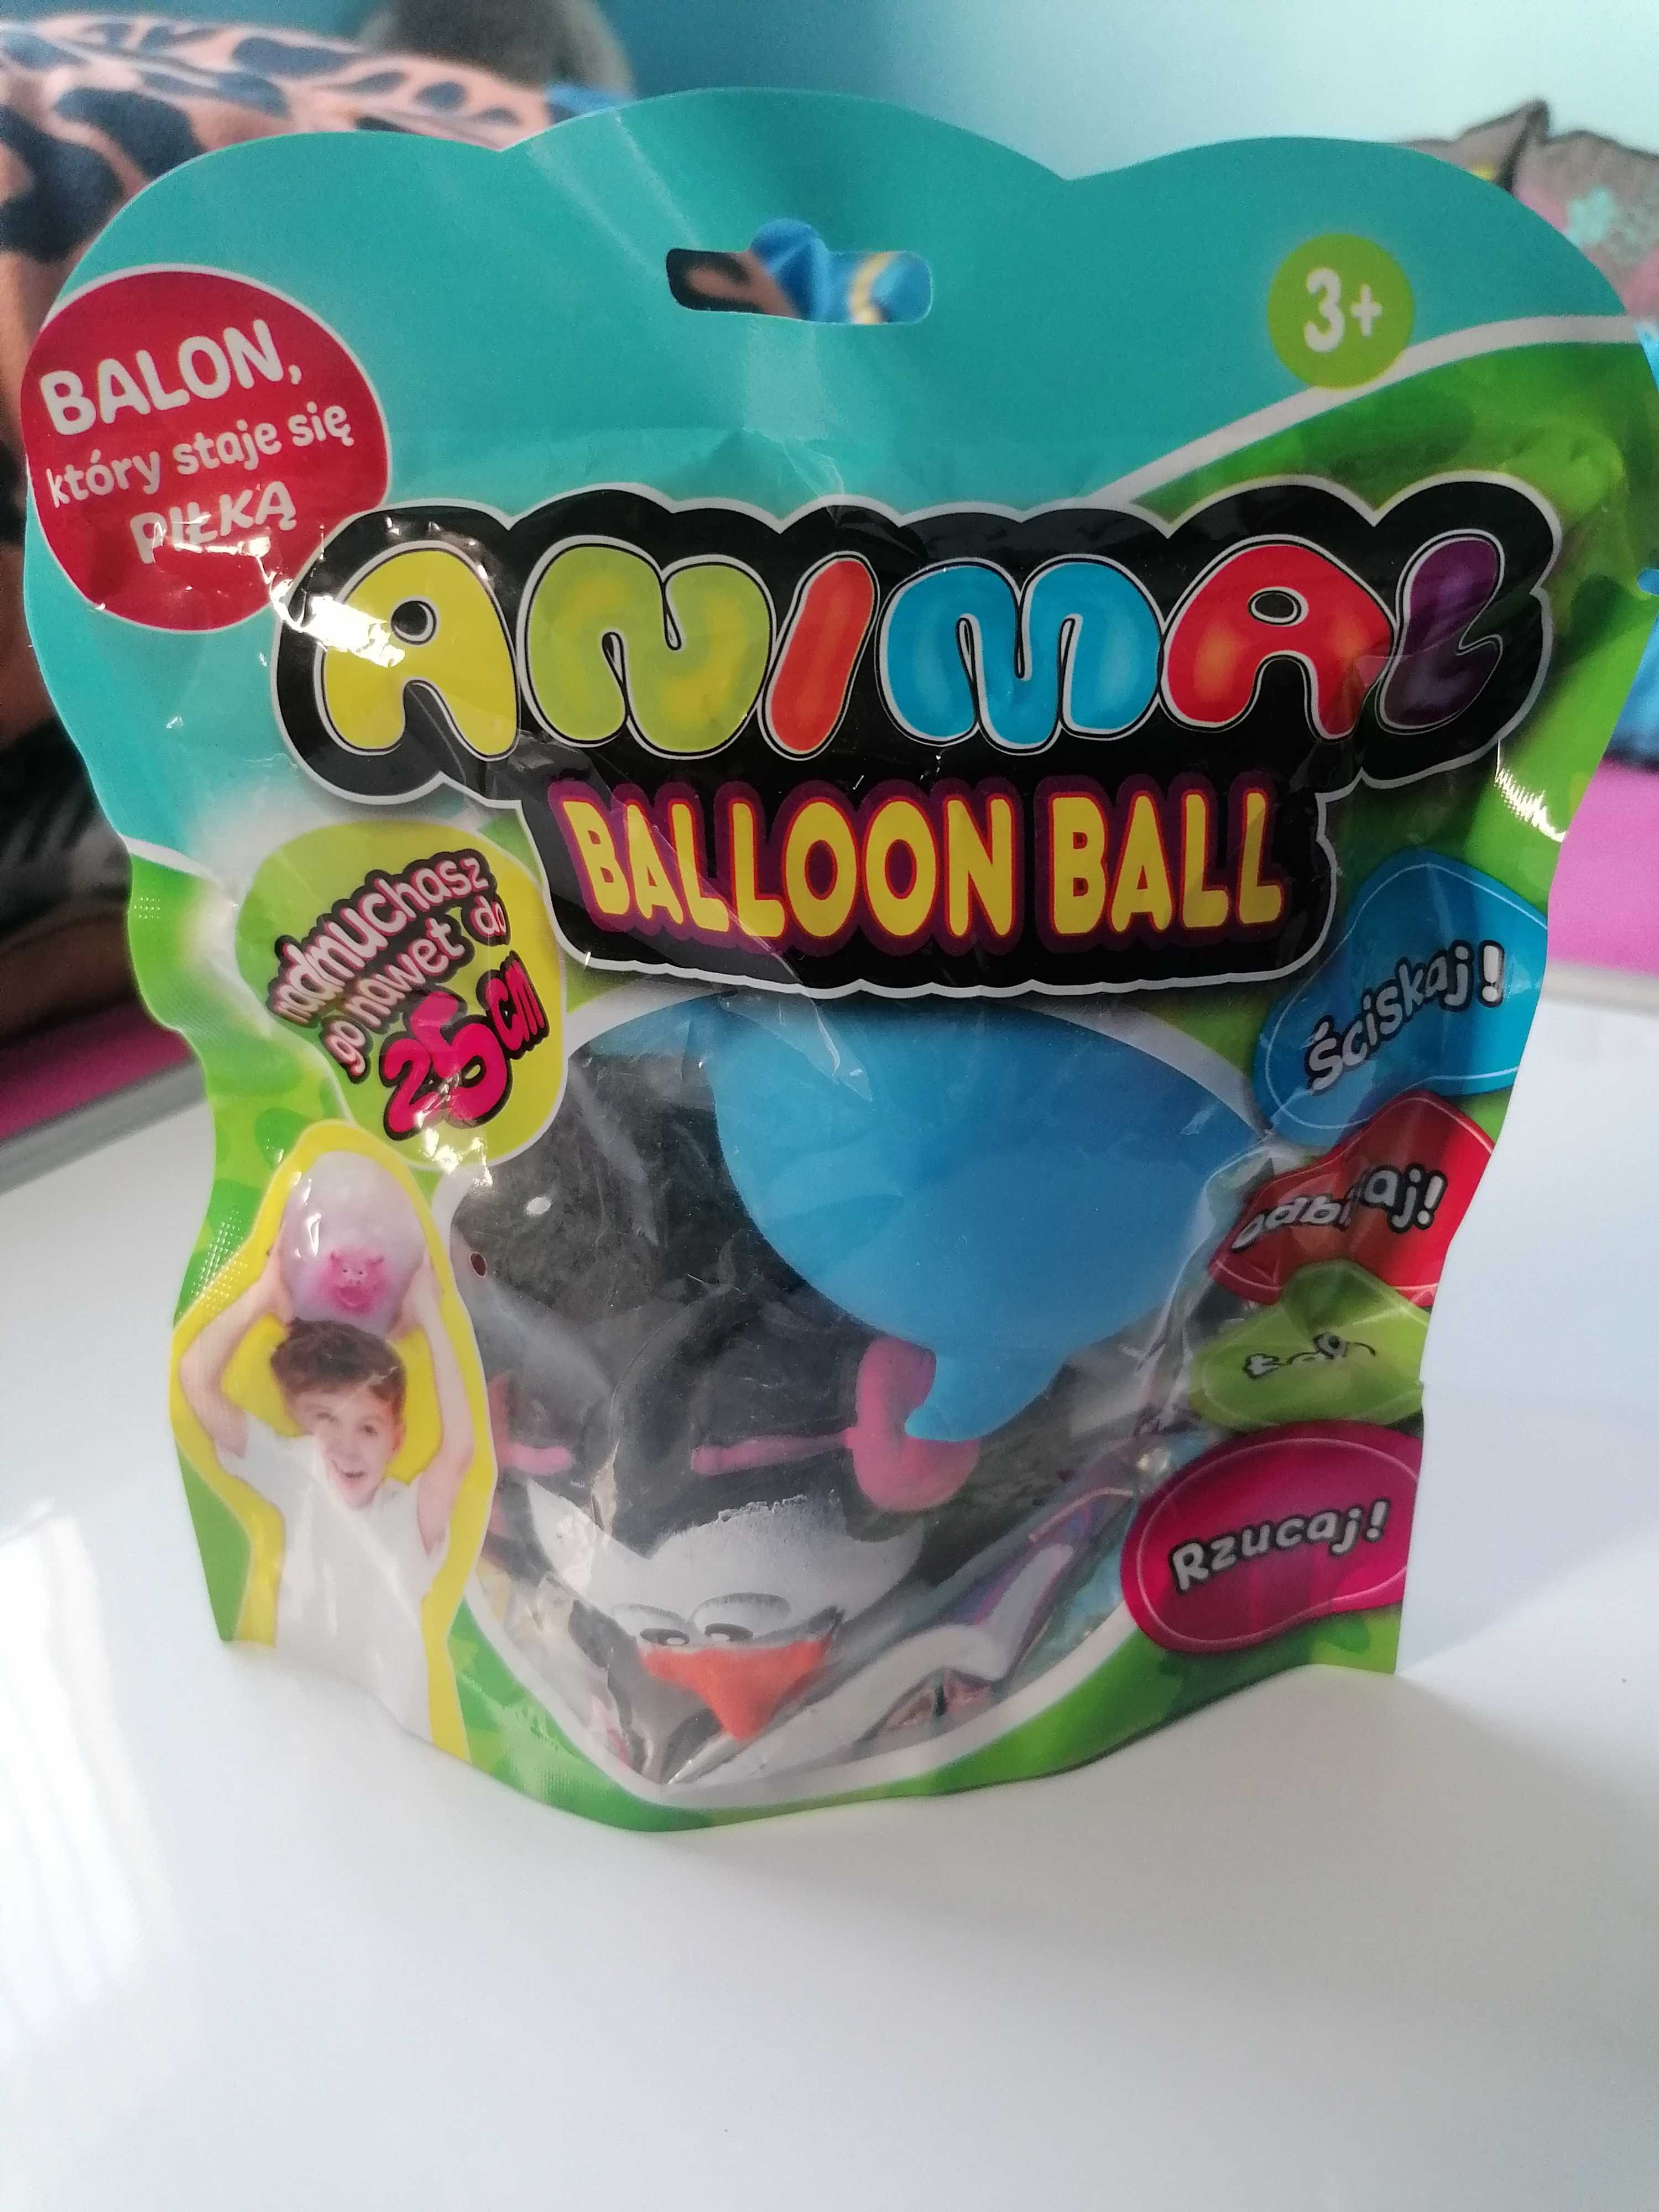 Balon piłka Animal Ballon Ball